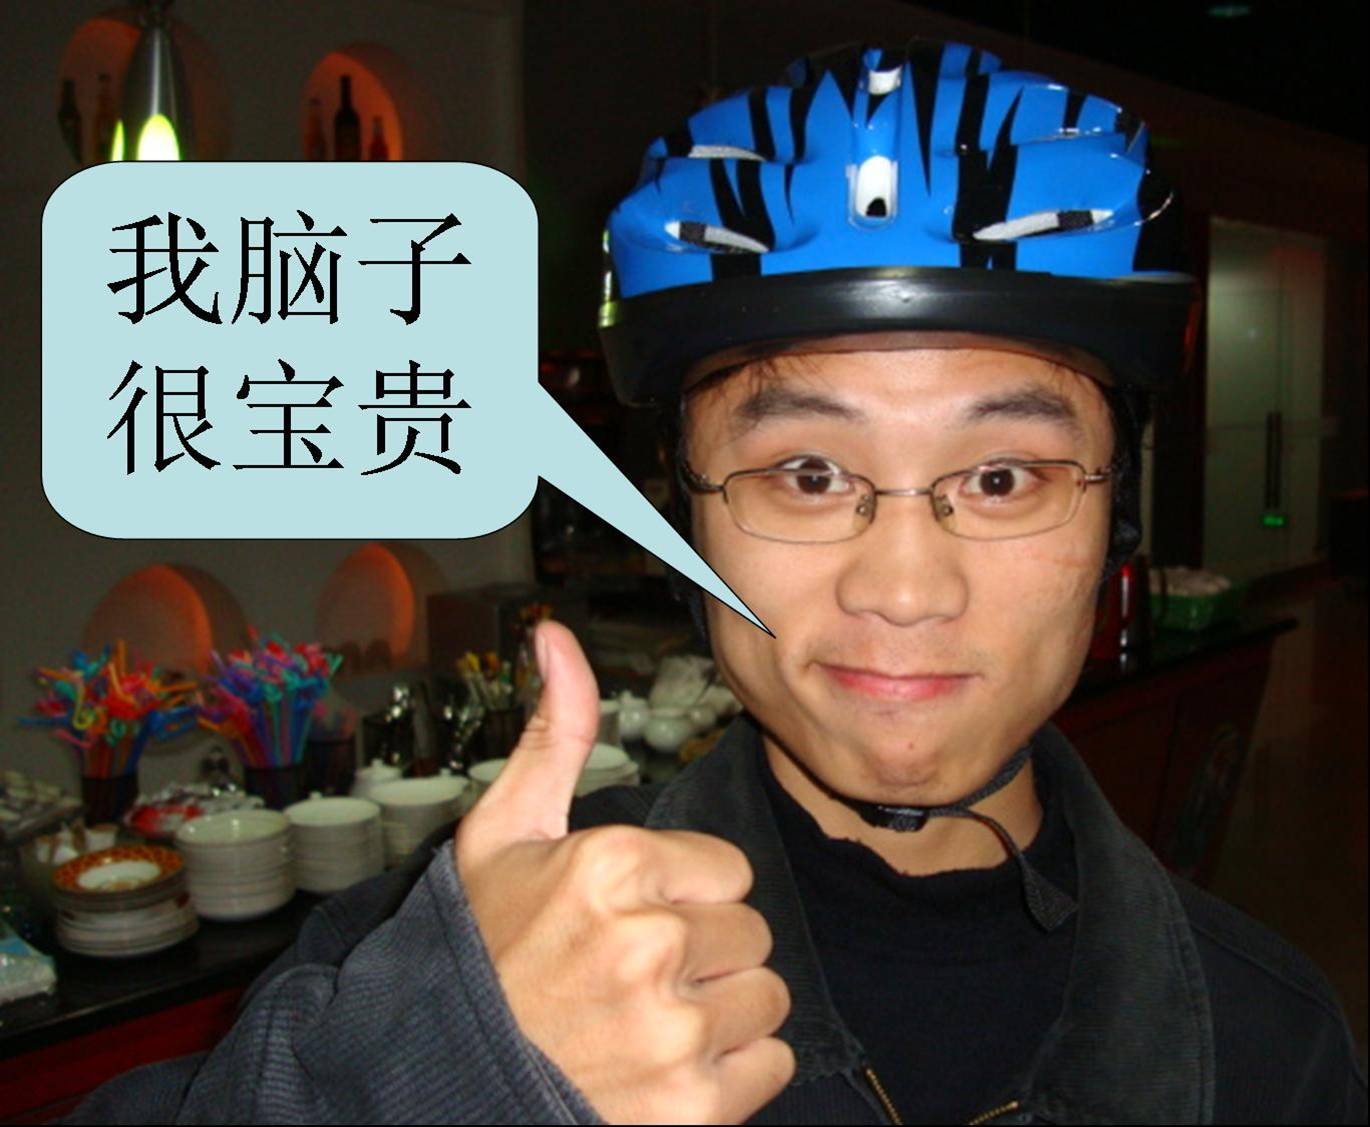  我们中国自行车头盔推广运动的海报男孩 。